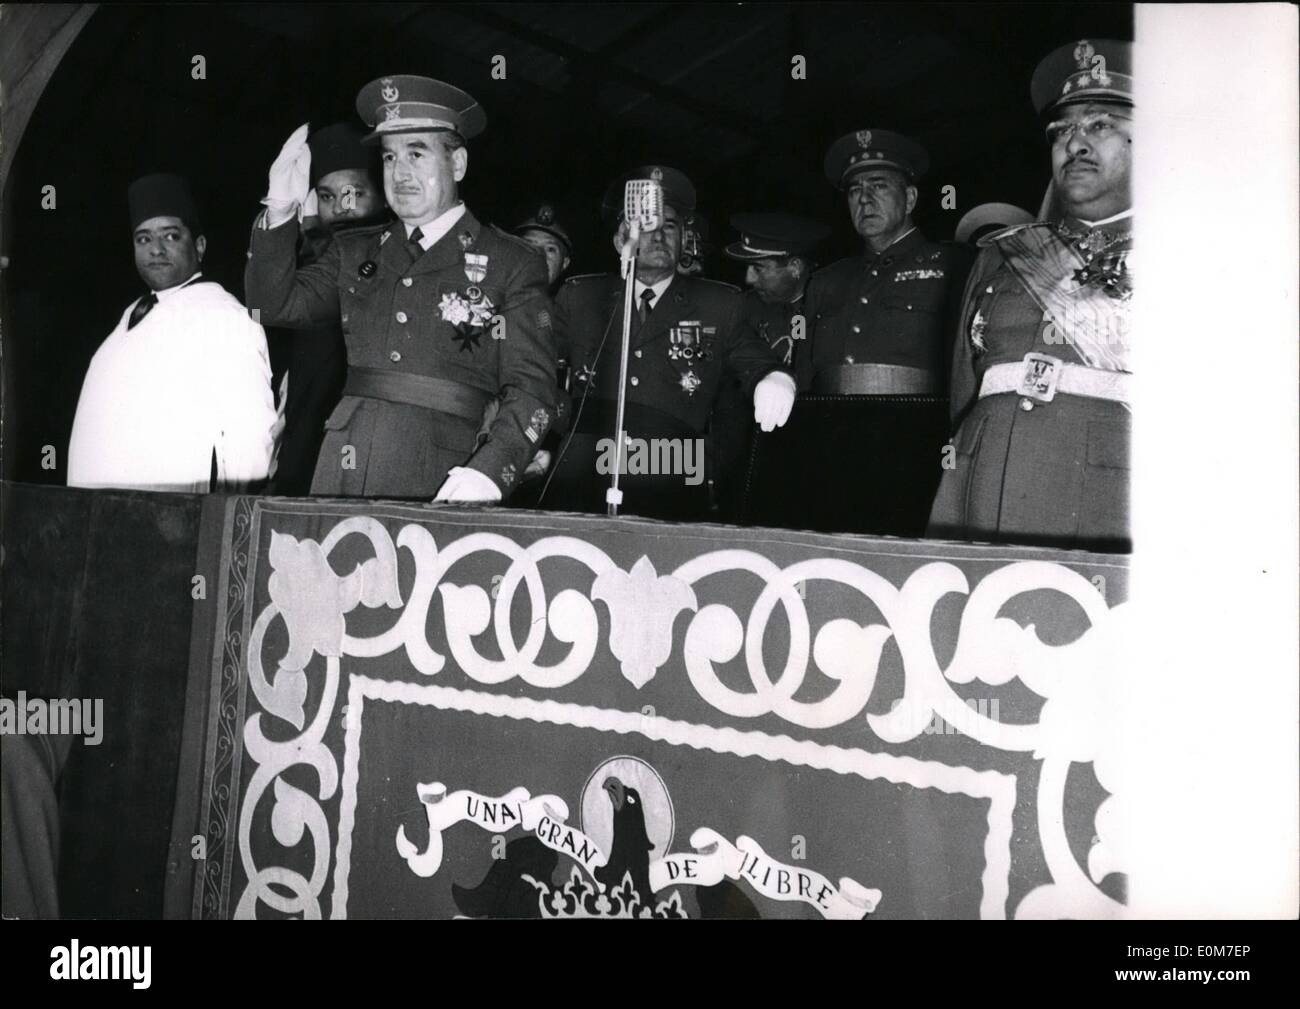 Gen 01, 1954 - Tetuan Anti dimostrazione francese; spagnolo alto commissario generale Garcia Valino (in primo piano) nel supporto ufficiale onde per il tifo marocchini durante l'anti francese manifestazione svoltasi a Tetuan, spagnolo in Marocco, di recente. Foto Stock